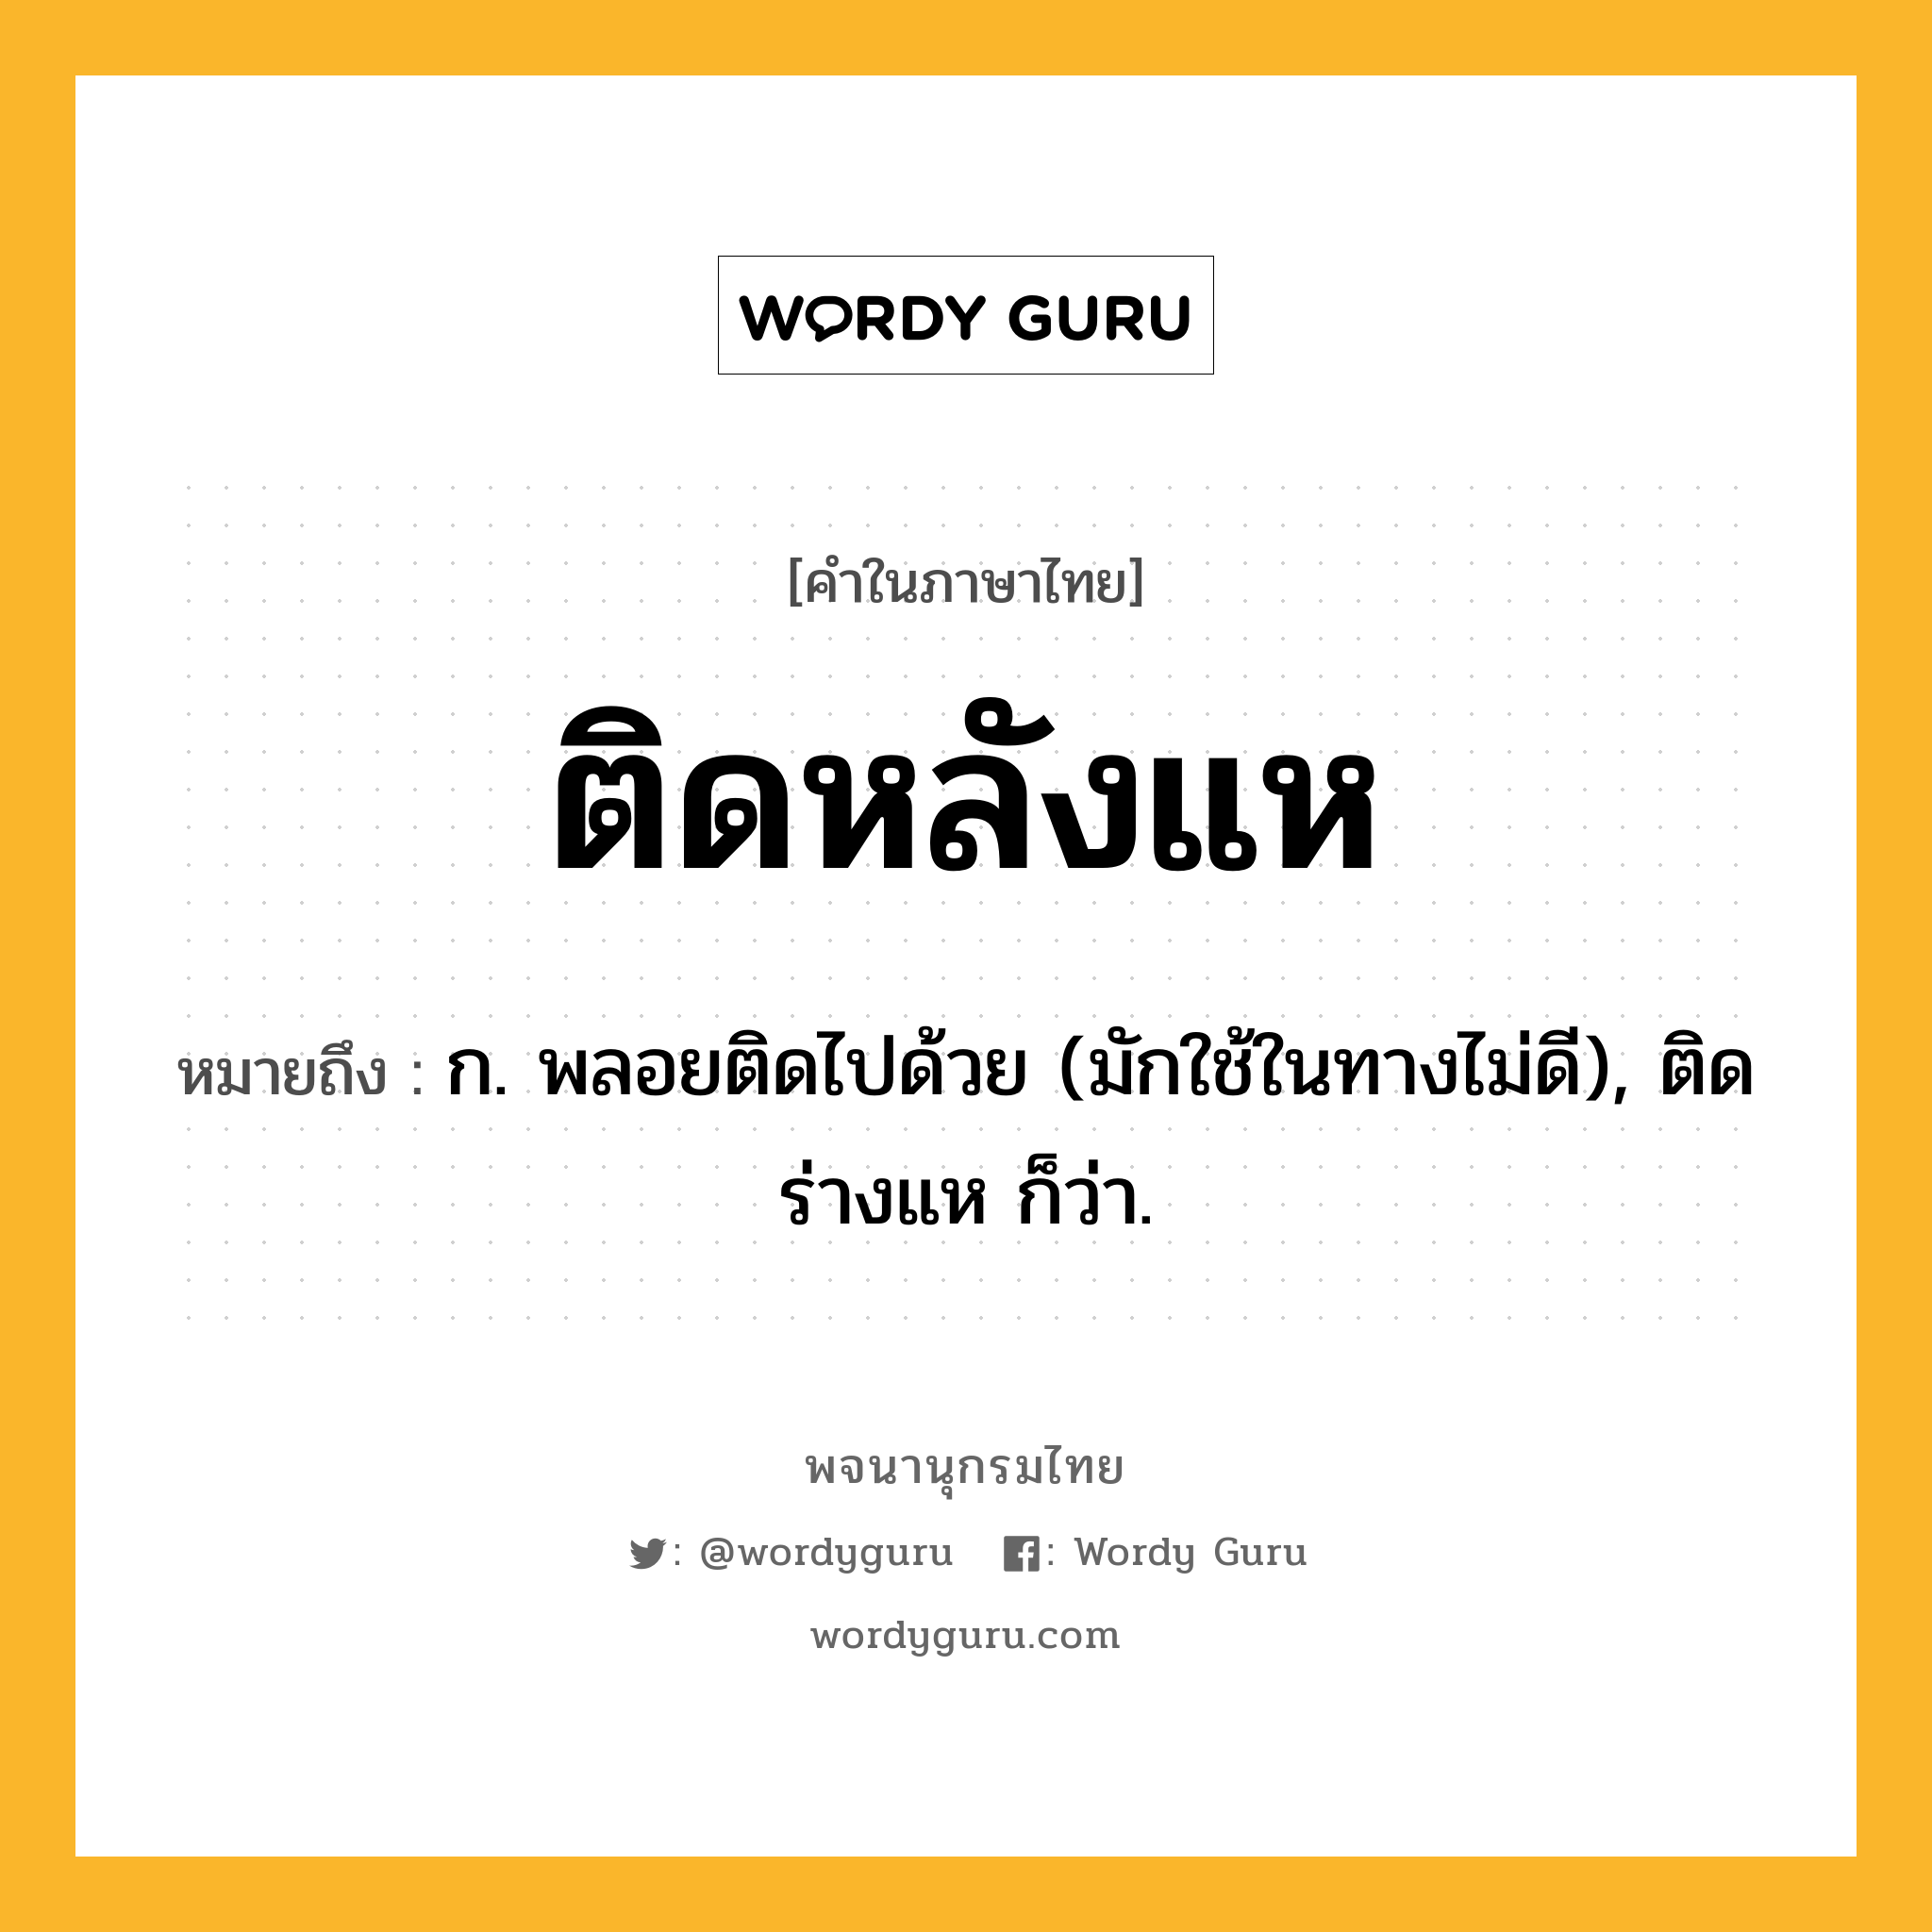 ติดหลังแห ความหมาย หมายถึงอะไร?, คำในภาษาไทย ติดหลังแห หมายถึง ก. พลอยติดไปด้วย (มักใช้ในทางไม่ดี), ติดร่างแห ก็ว่า.